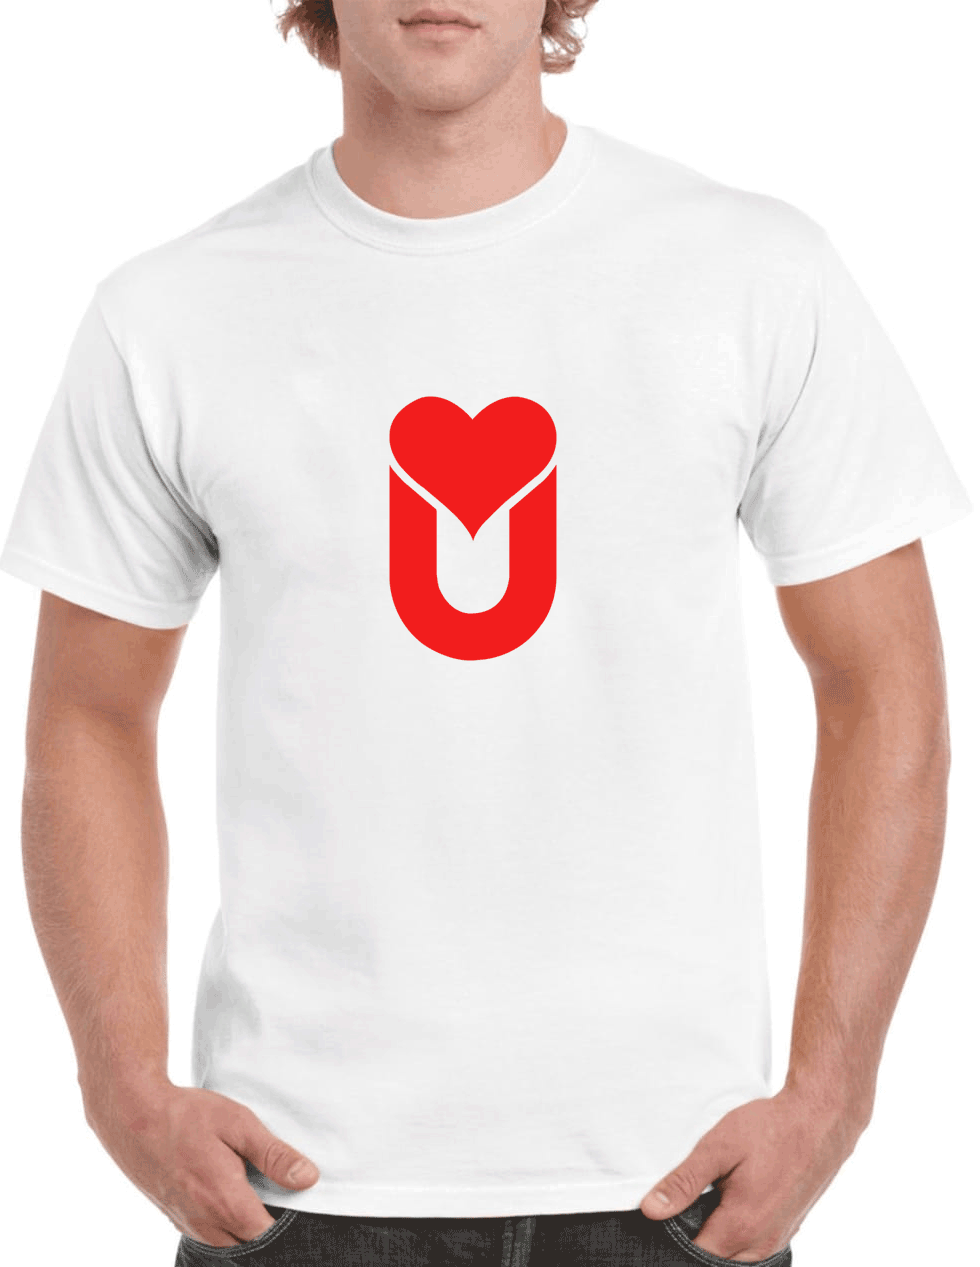 LOVE-U-LED-T-shirt